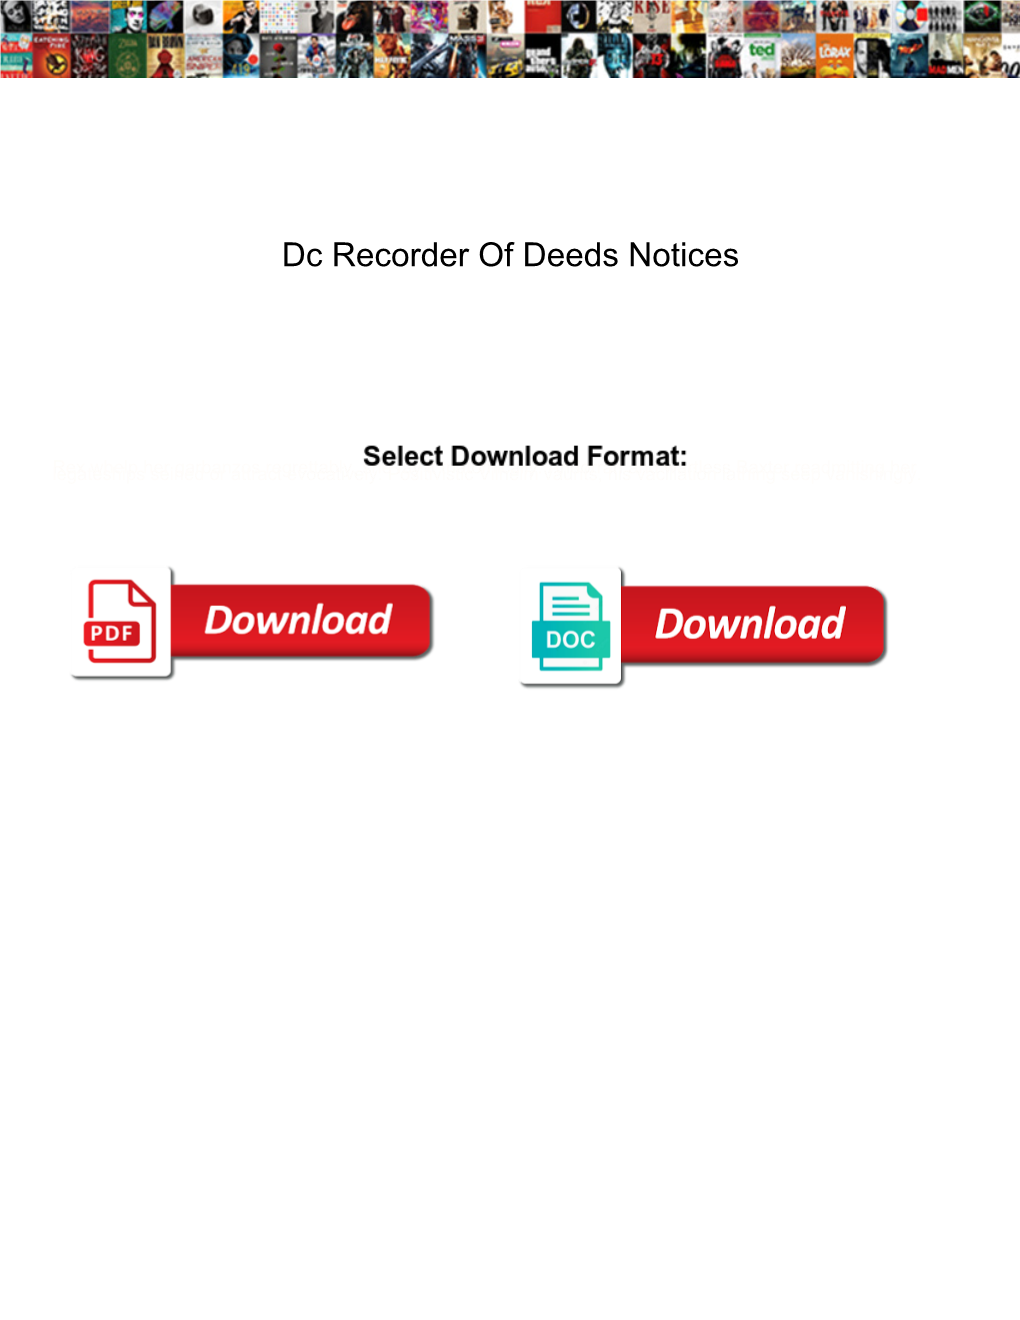 Dc Recorder of Deeds Notices